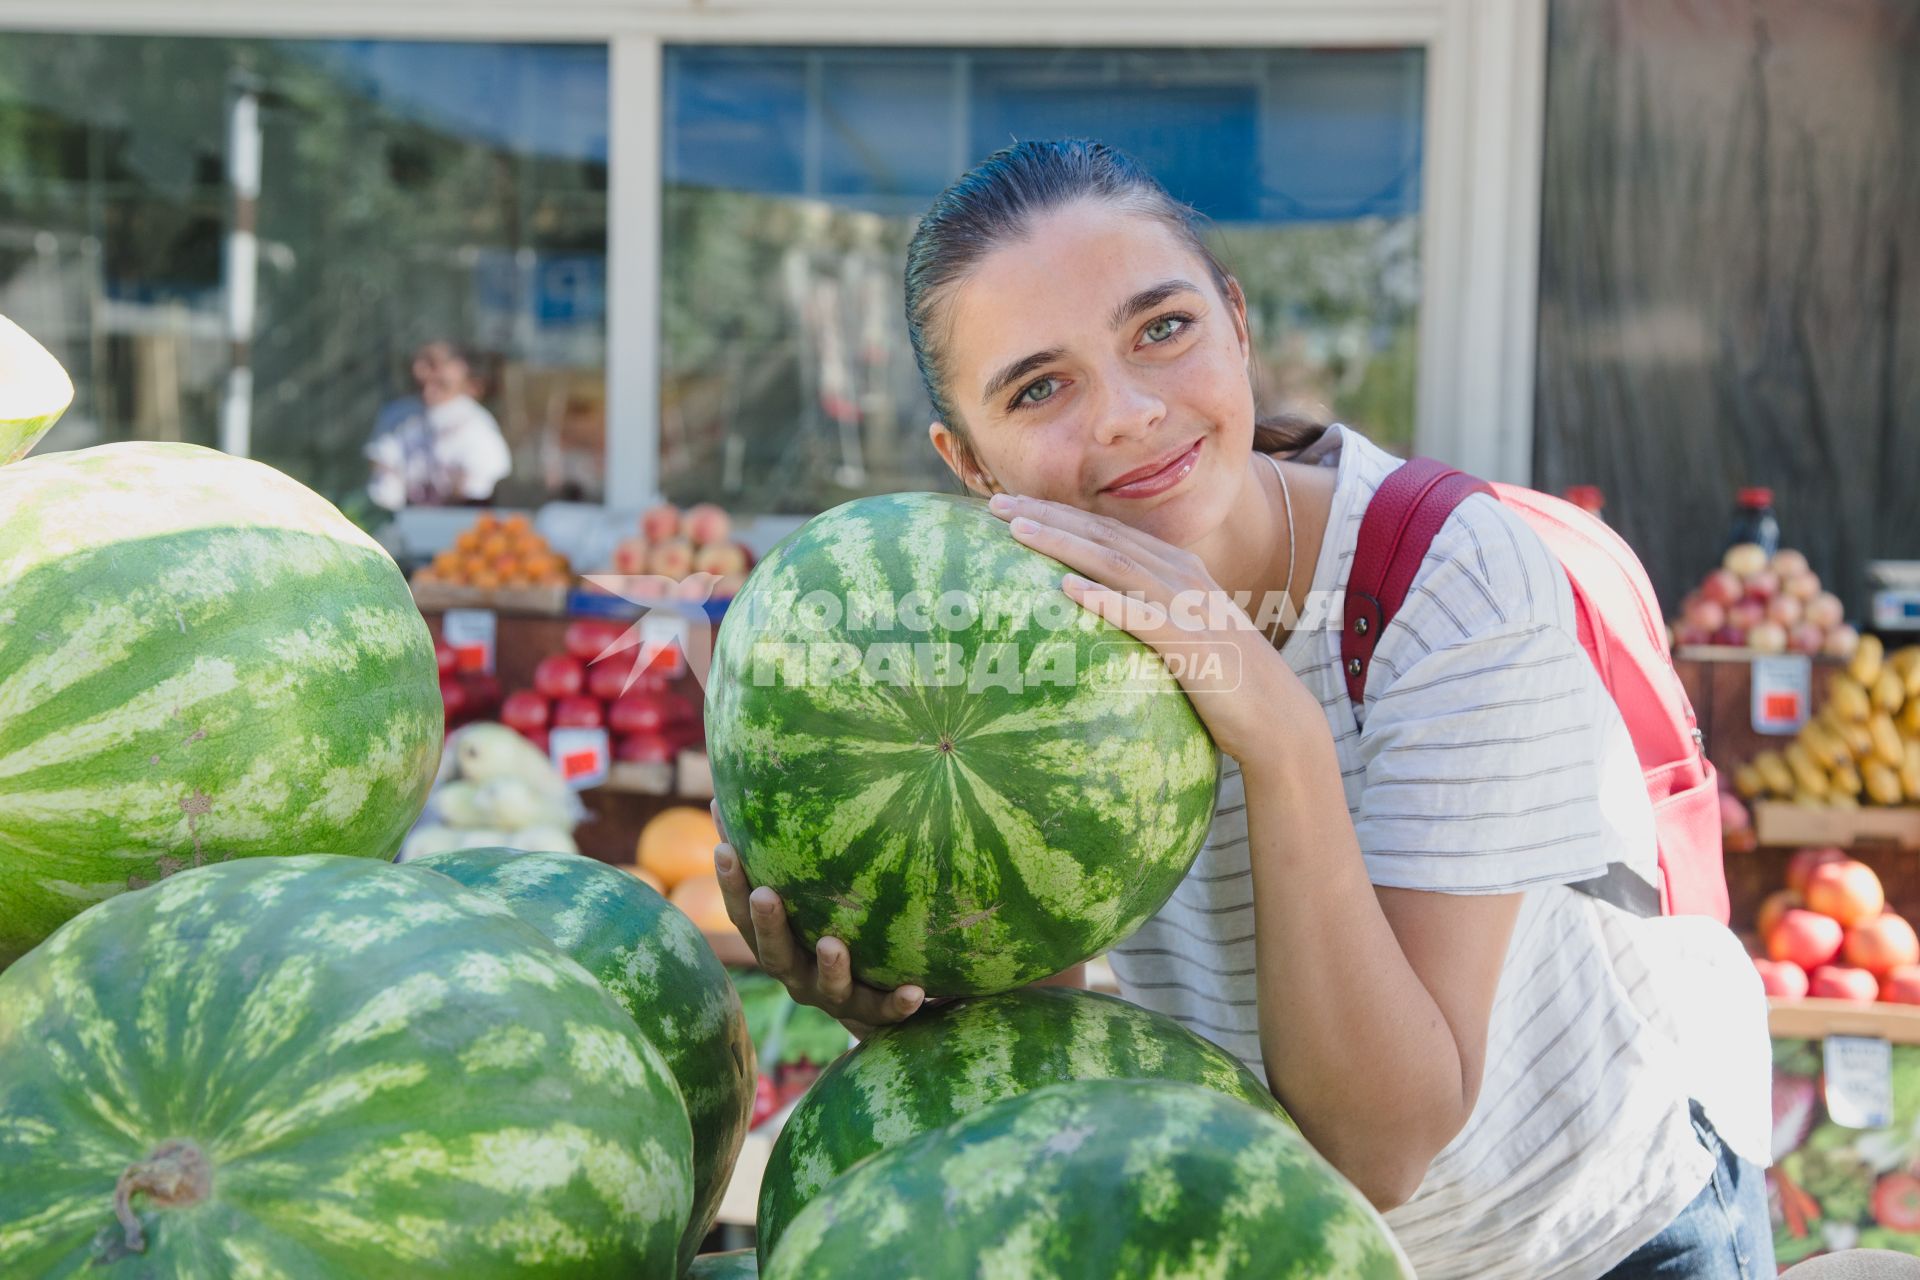 Челябинск. Девушка выбирает арбуз на рынке.